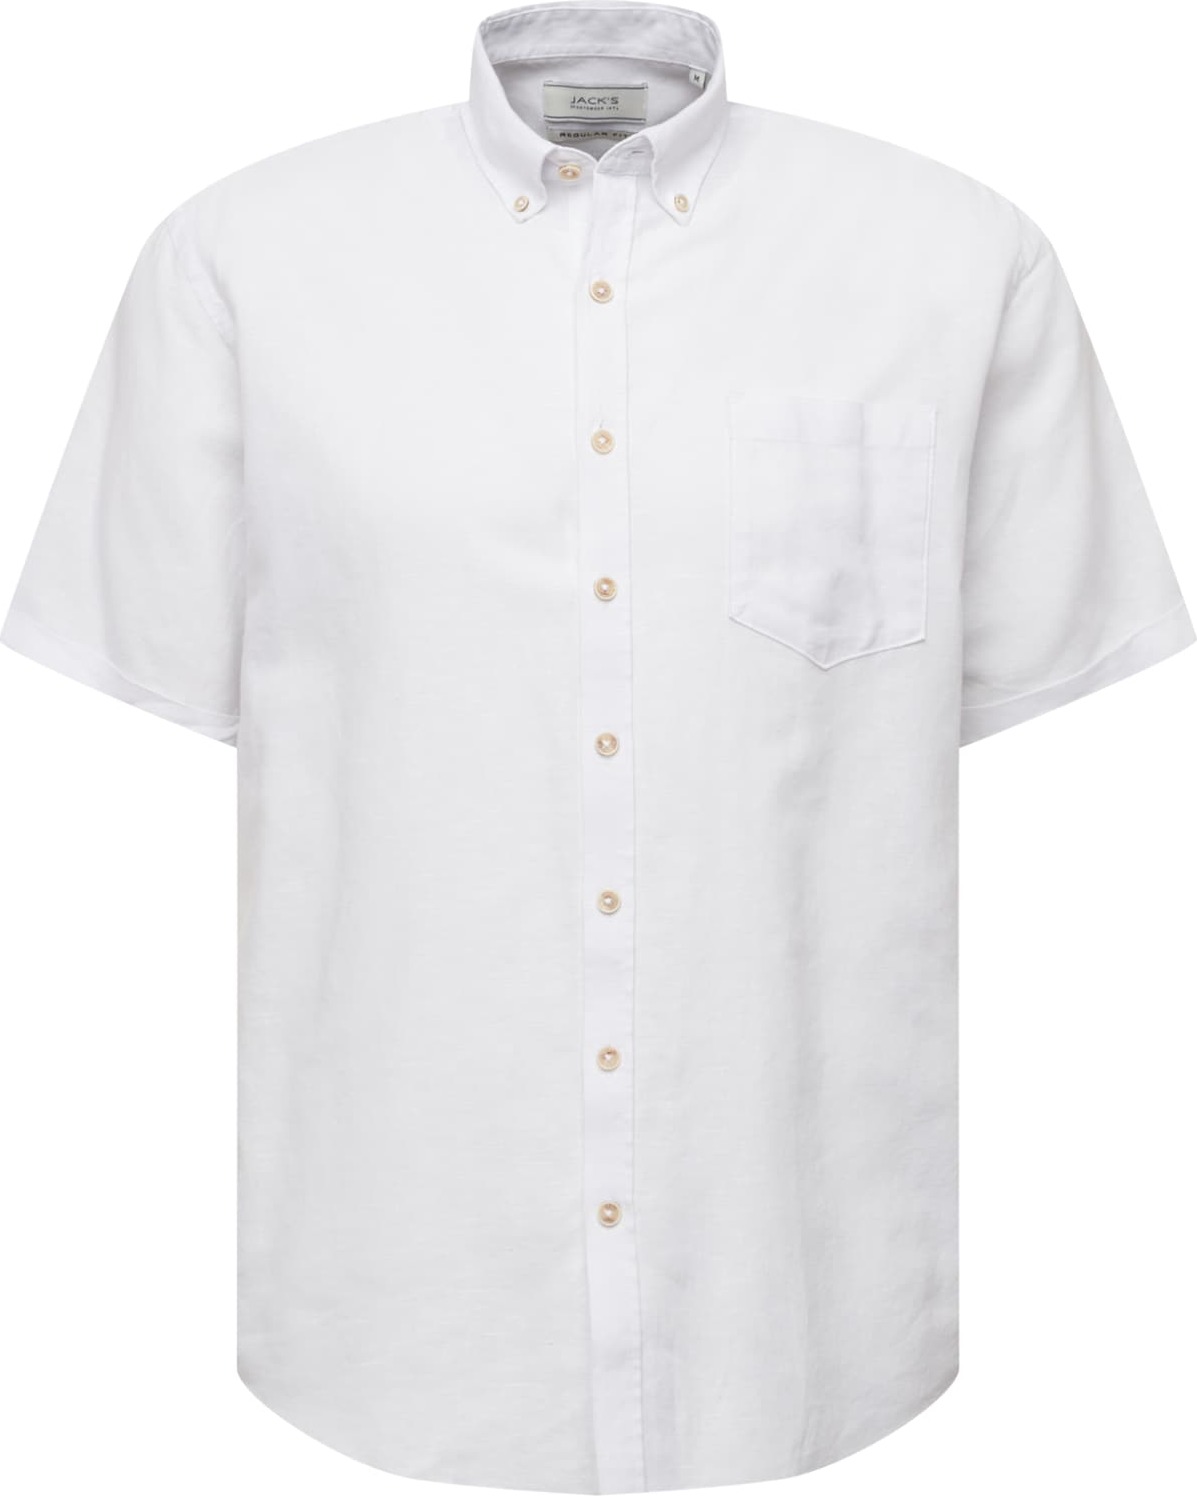 Jack's Košile bílá